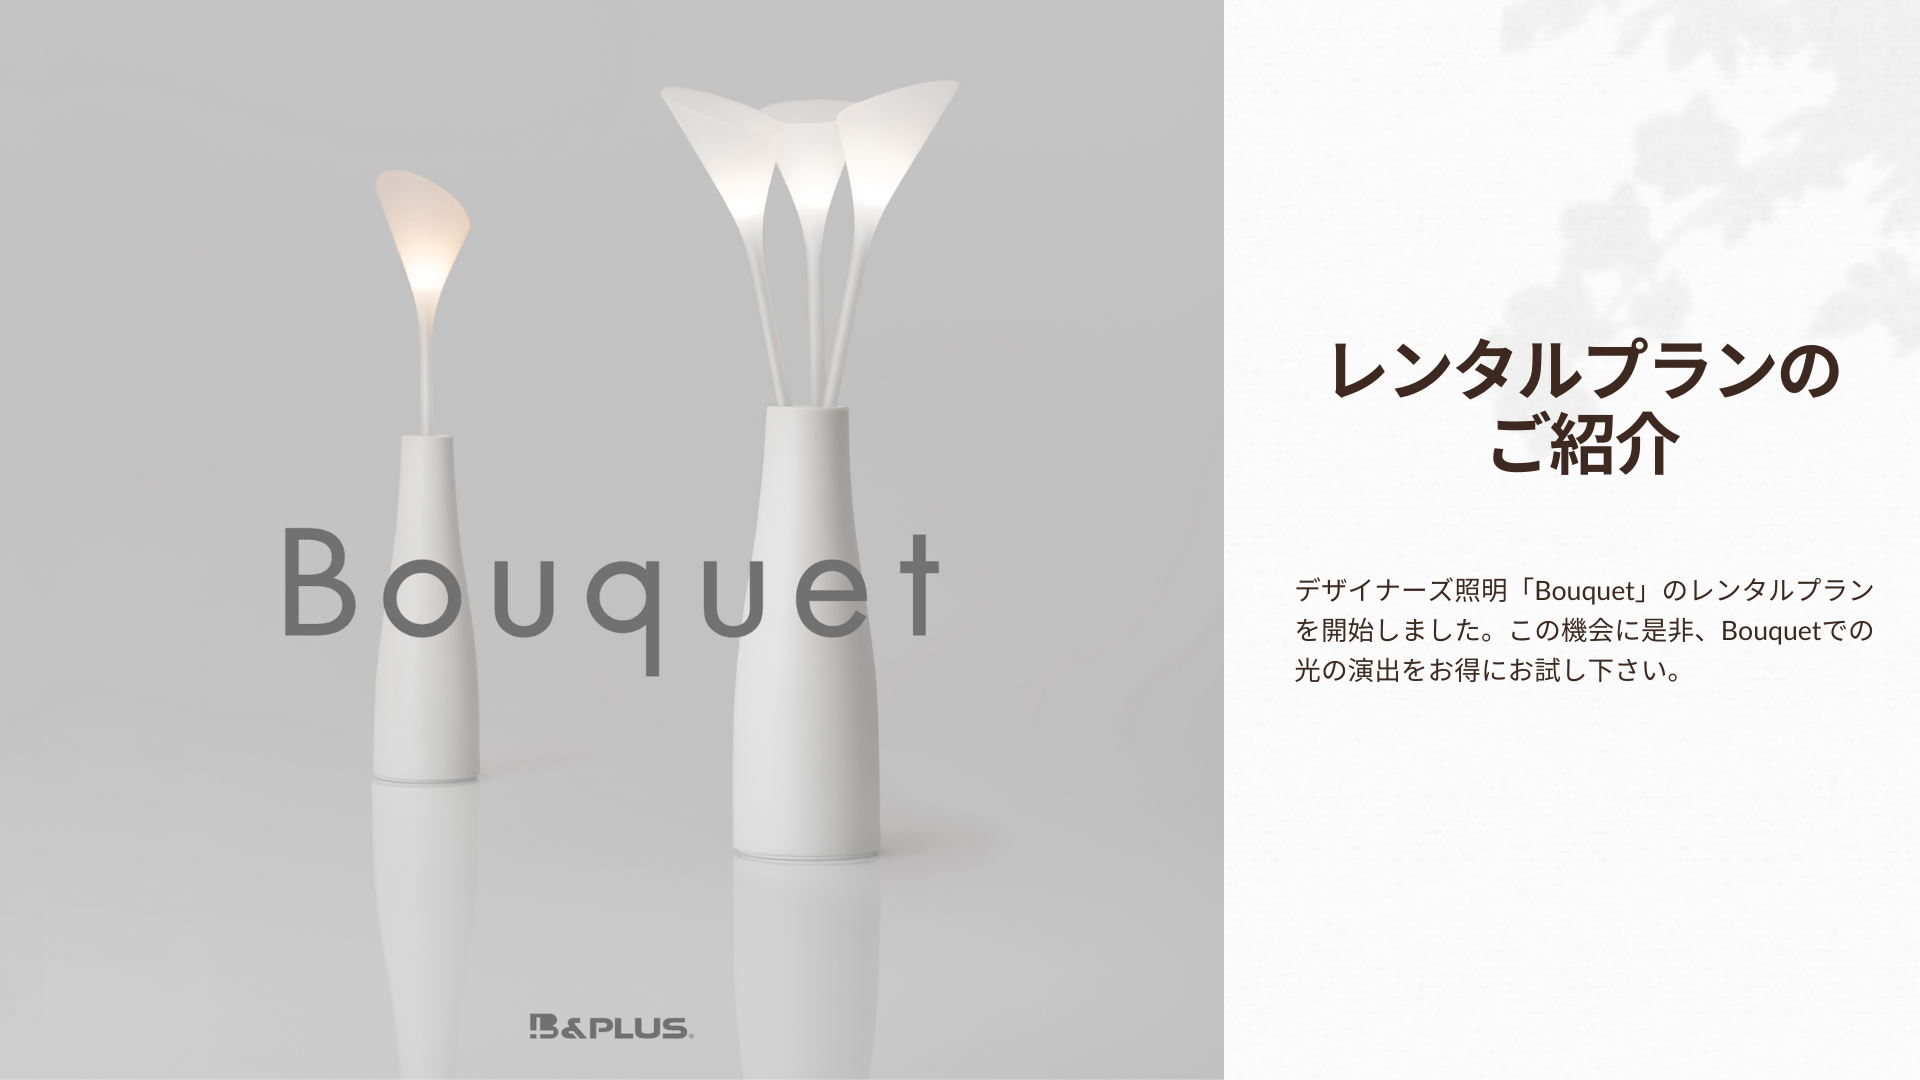 デザイナーズ照明「ワイヤレス給電で光る花束 Bouquet」のレンタルプランを開始